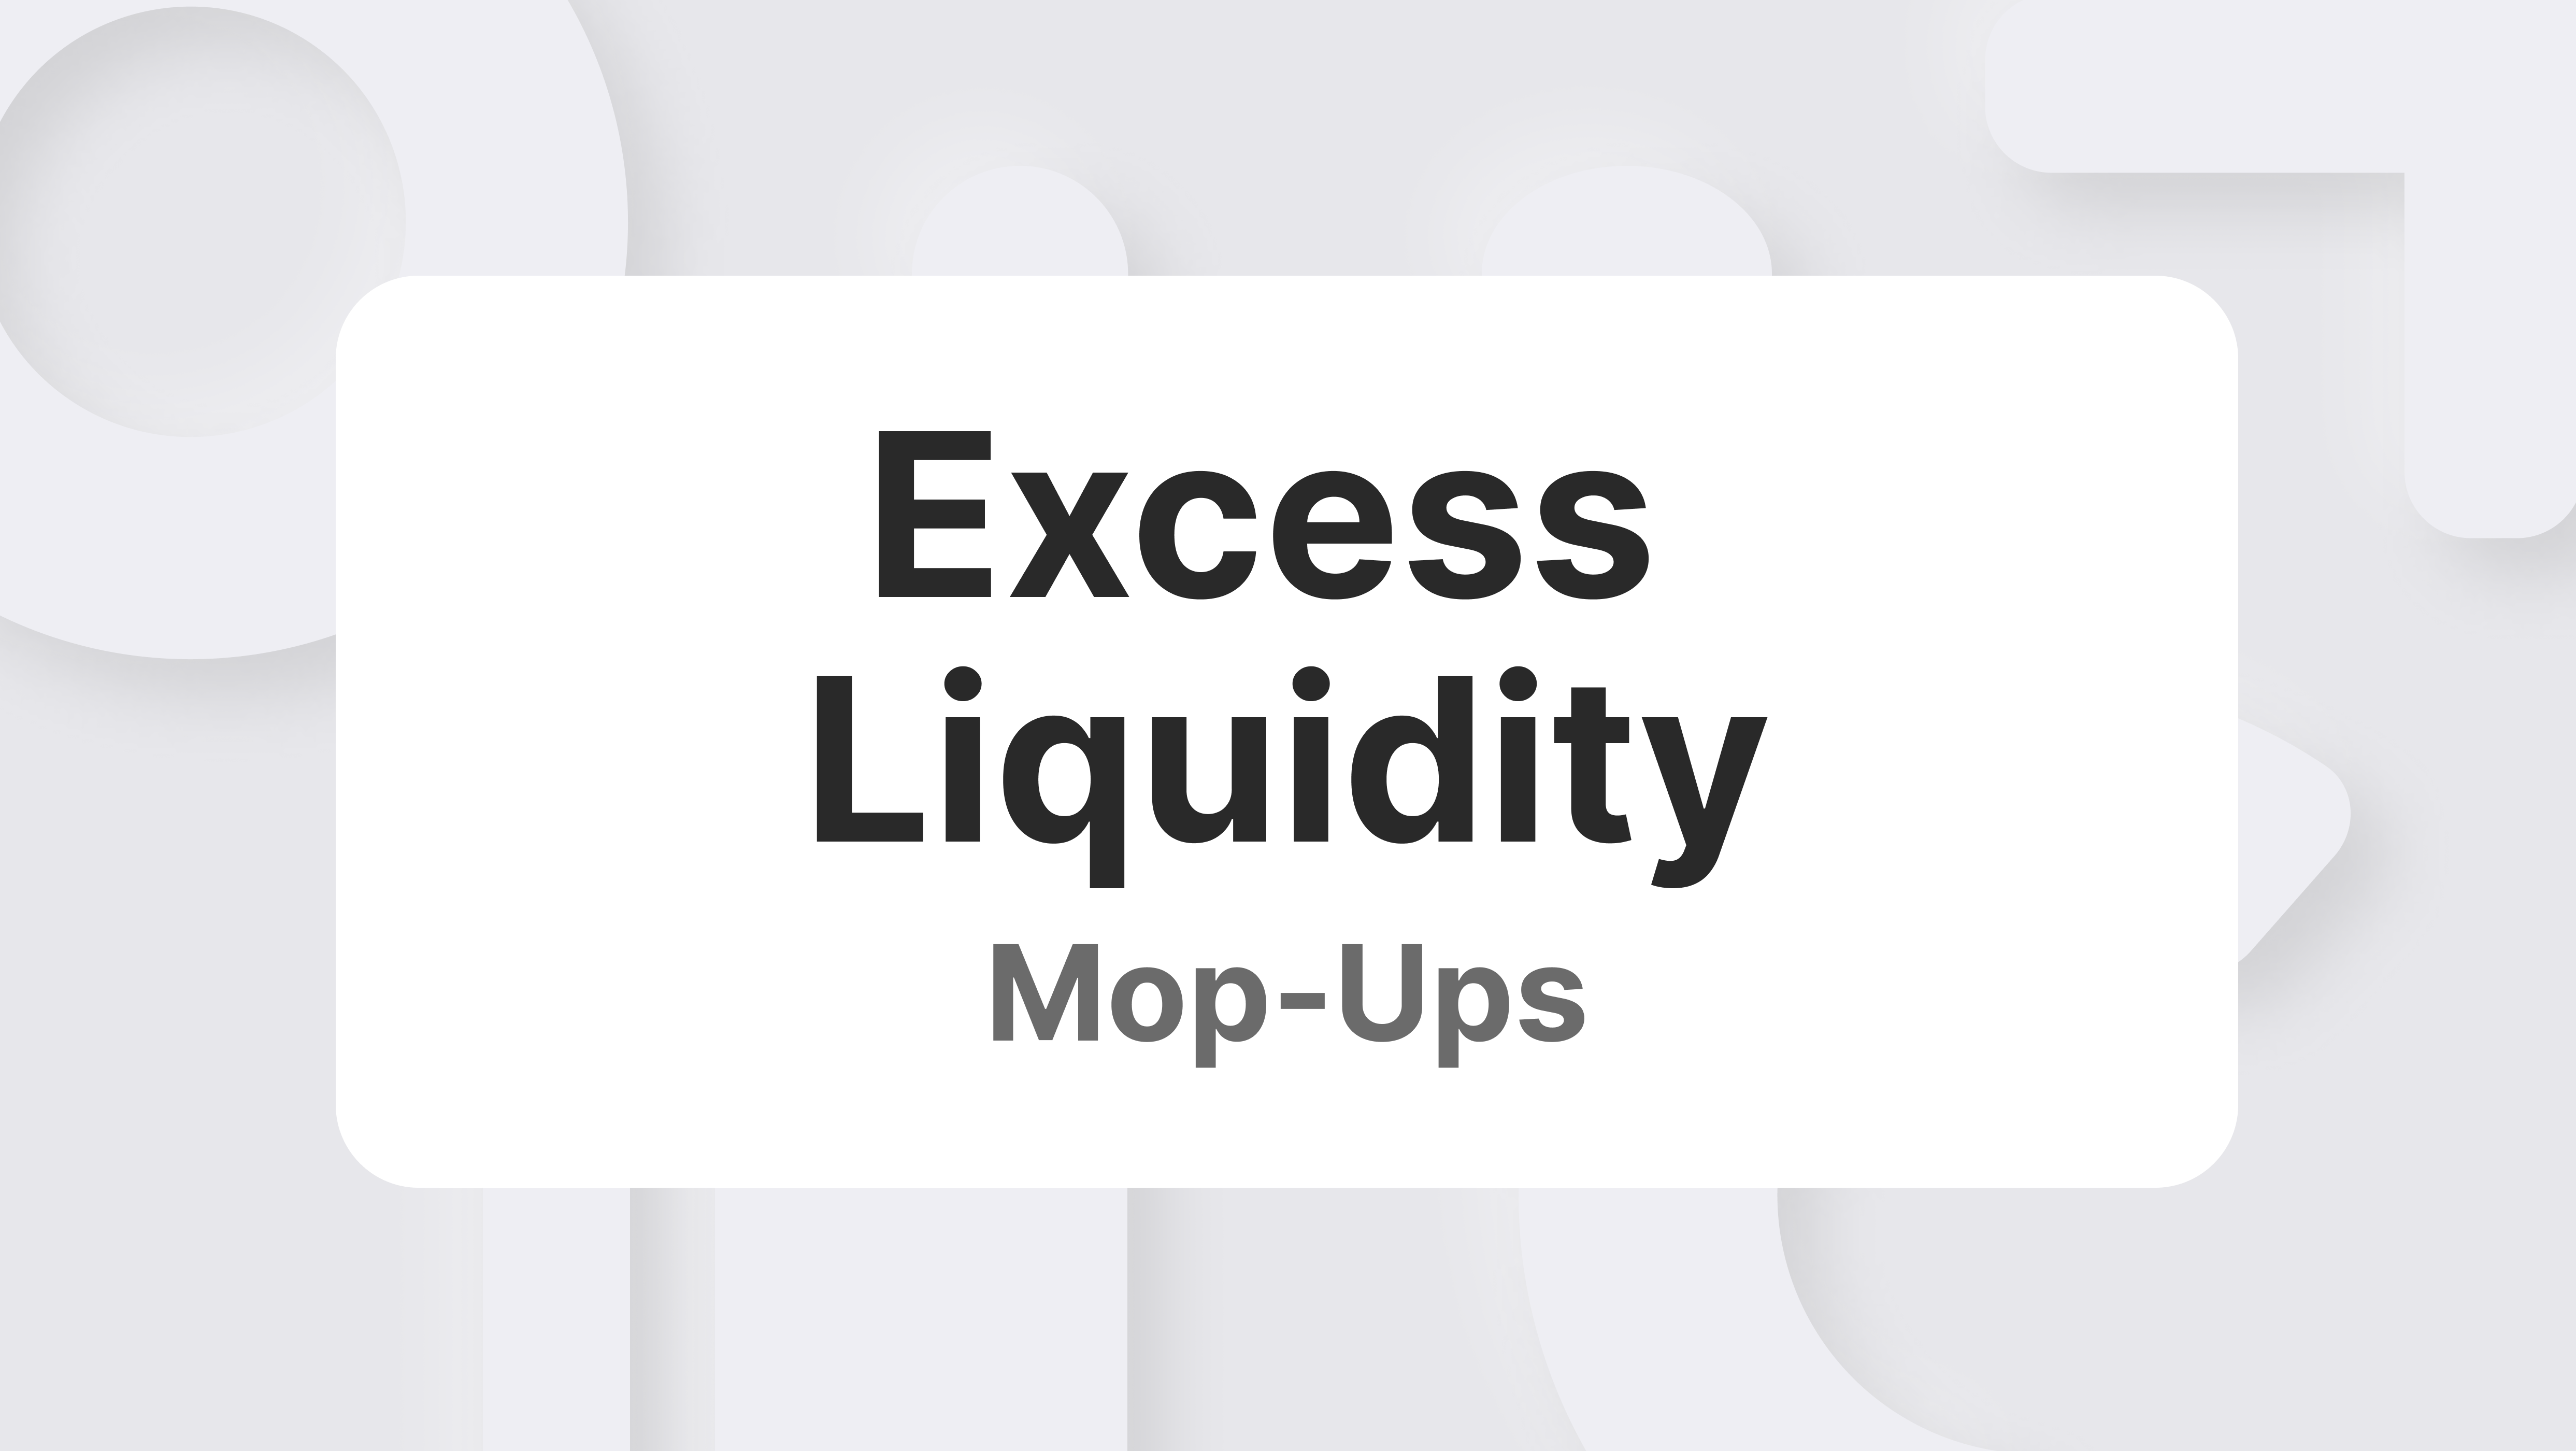 Understanding Excess Liquidity Mop-Ups